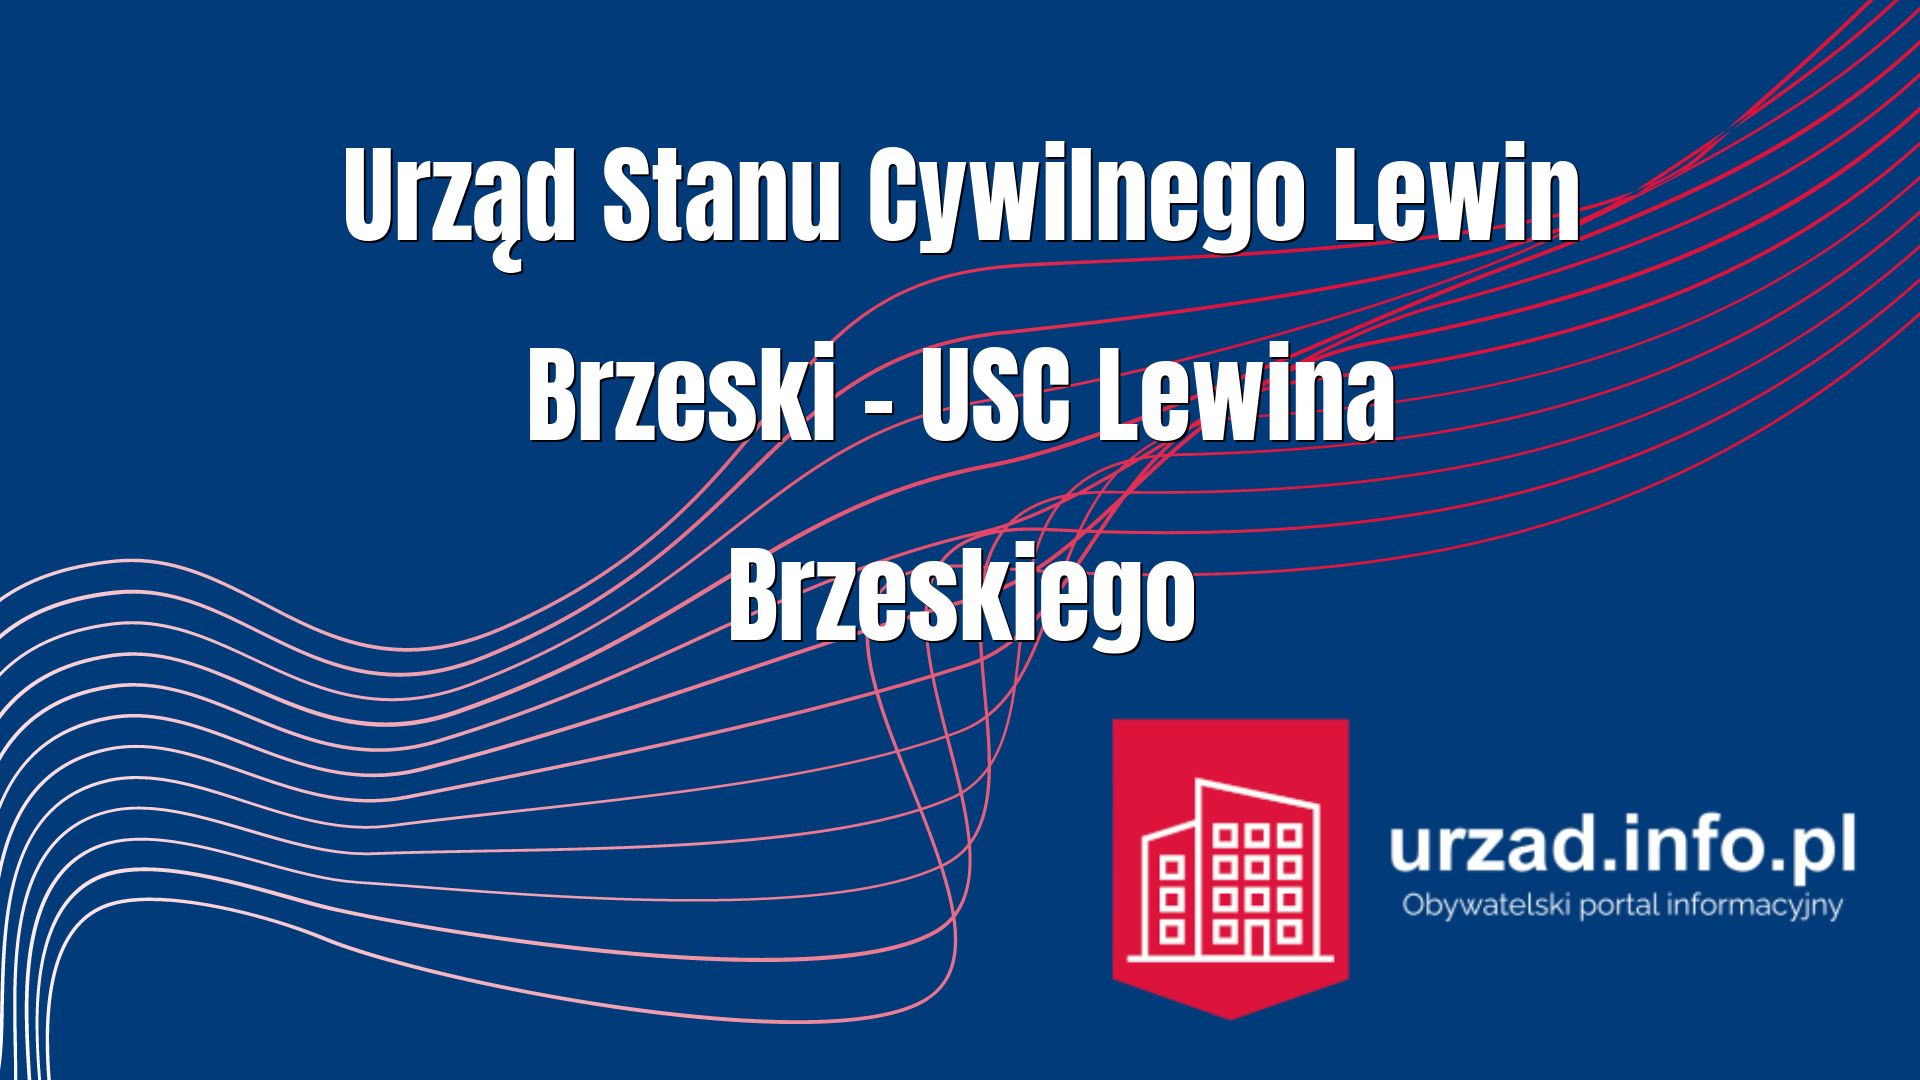 Urząd Stanu Cywilnego Lewin Brzeski – USC Lewina Brzeskiego